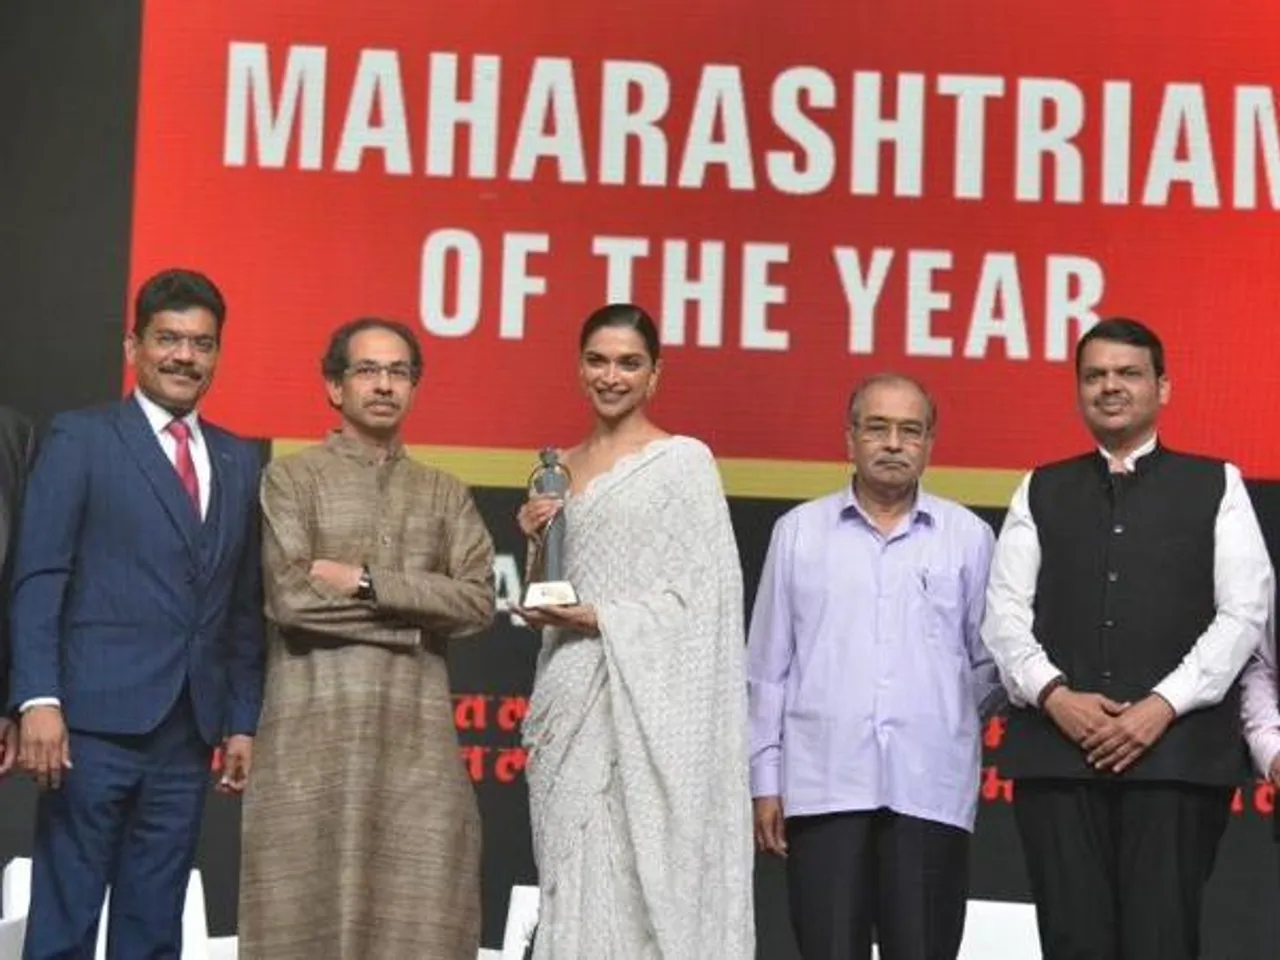 दीपिका पादुकोण को "लोकमत महारास्ट्रियन ऑफ़ द ईयर" के अवार्ड से सम्मानित किया गया